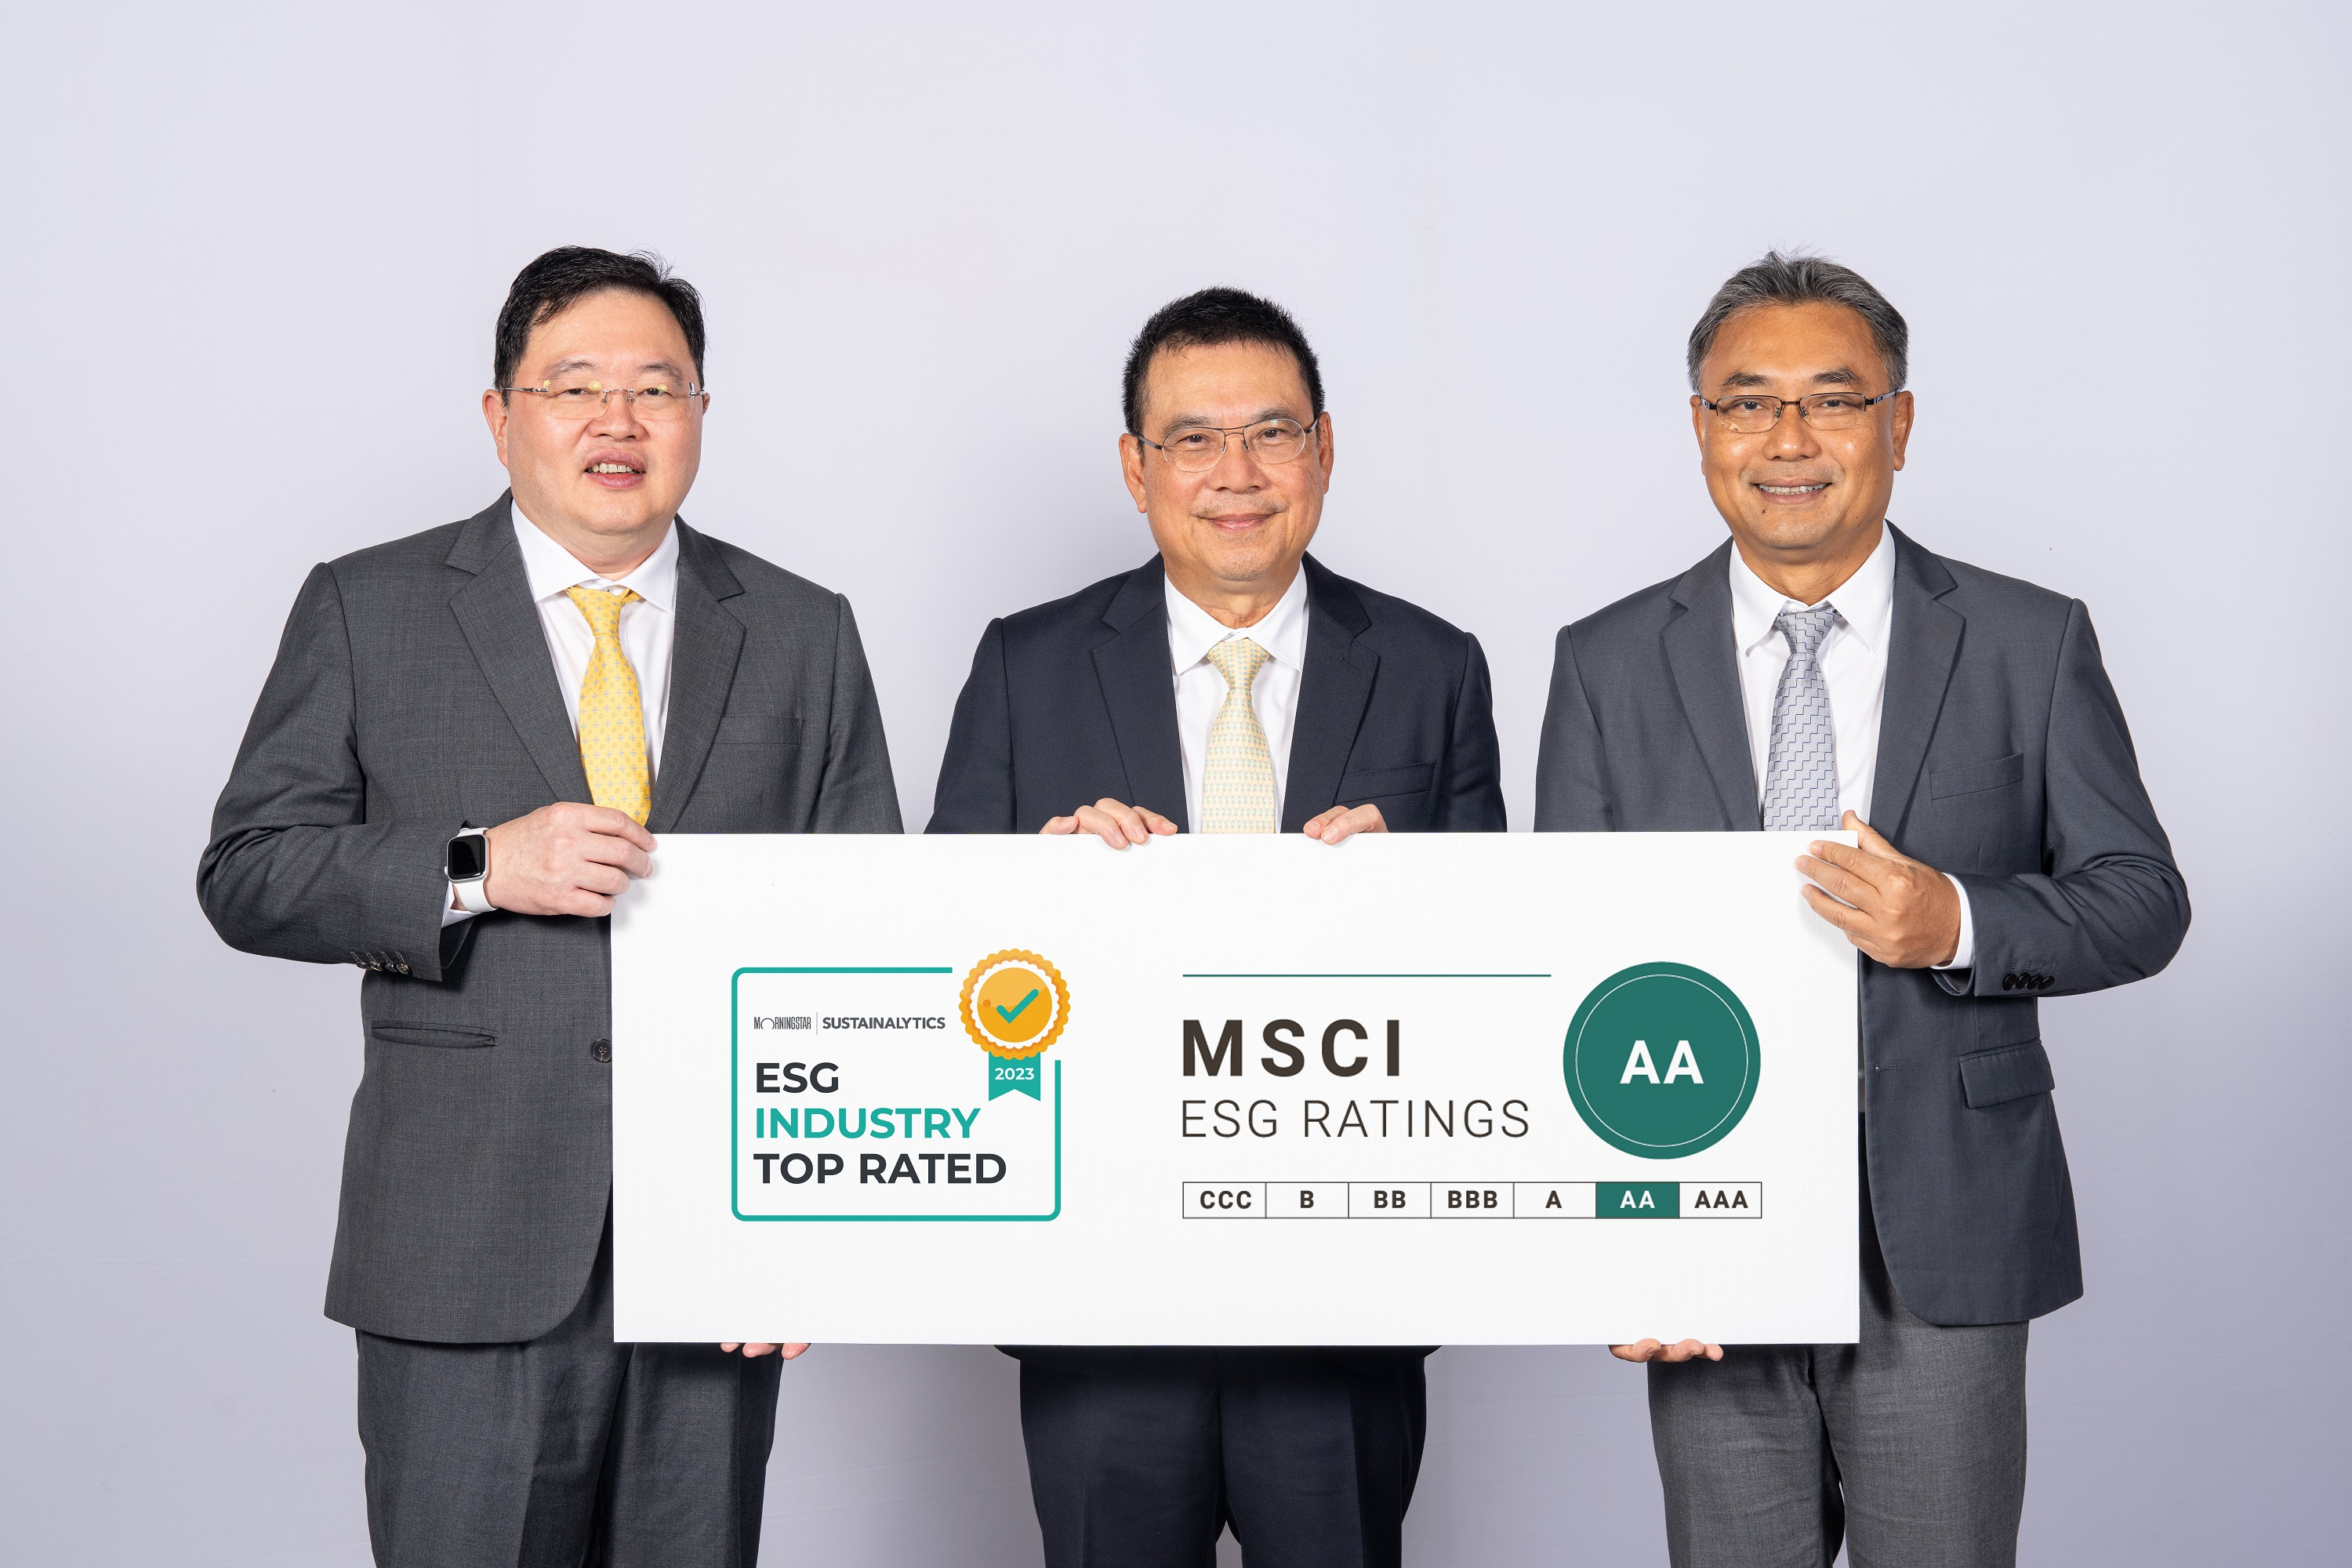 เอสซีจี ผู้นำธุรกิจยั่งยืนระดับโลกได้รับการยอมรับจากดัชนีความยั่งยืน ESG Risk Rating ระดับ ESG Industry Top Rated และ MSCI ESG Rating ระดับ AA (Leader)